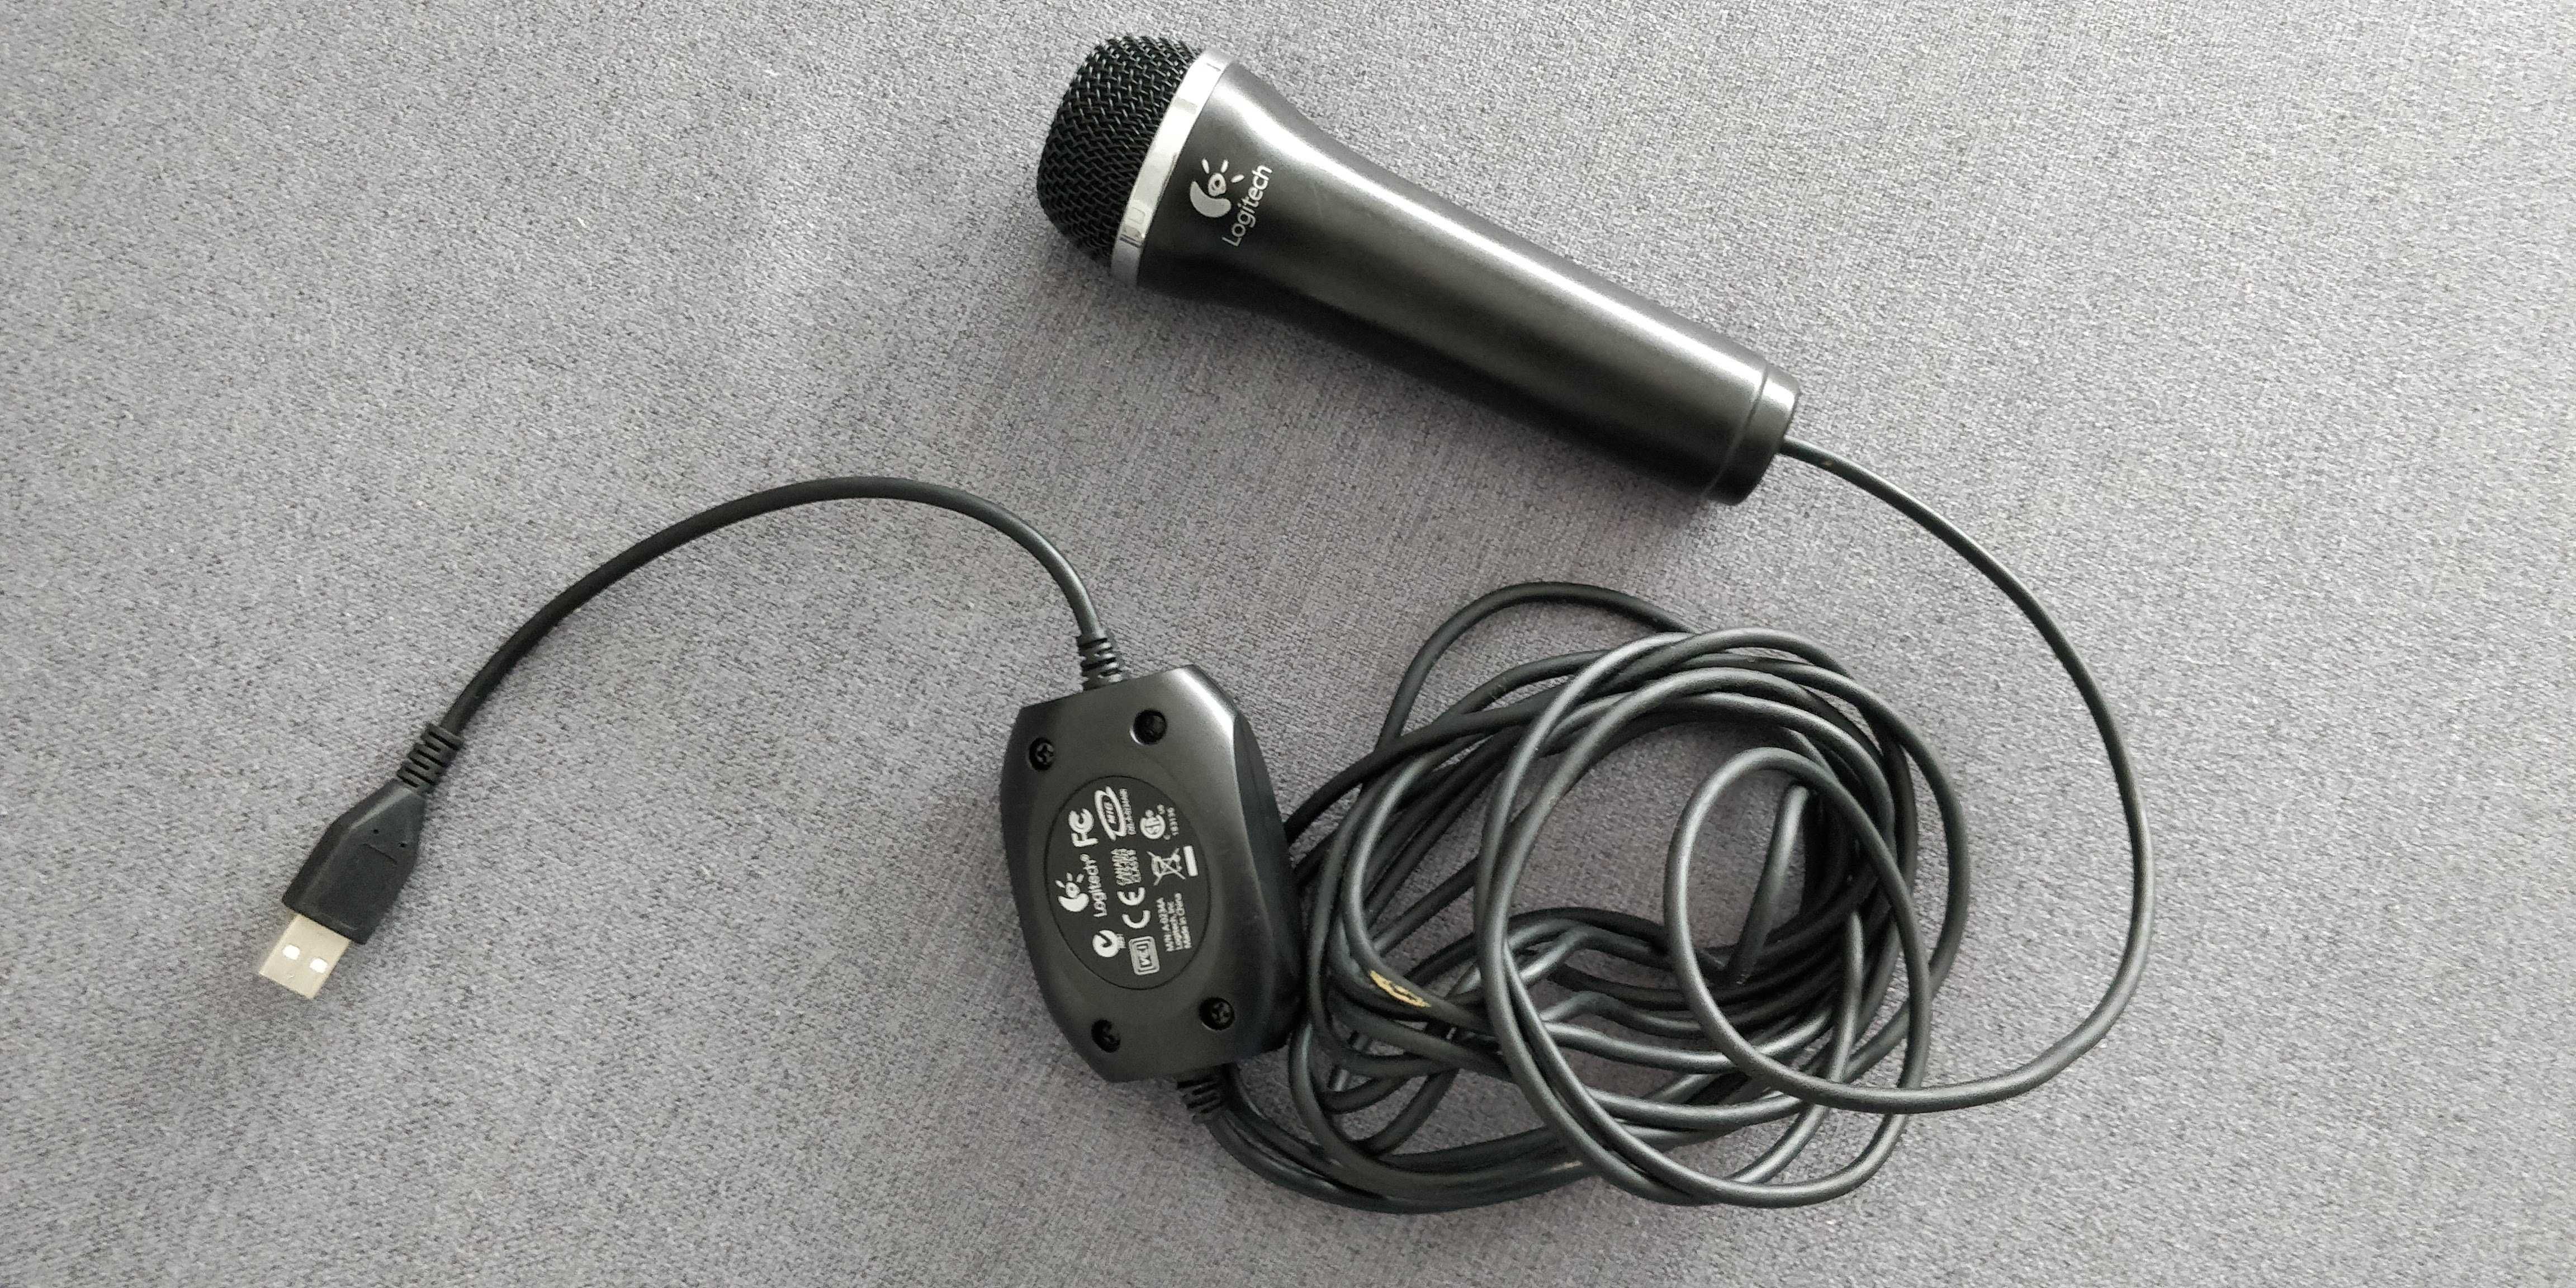 Microfone Logitech - XBOX 360 / PC